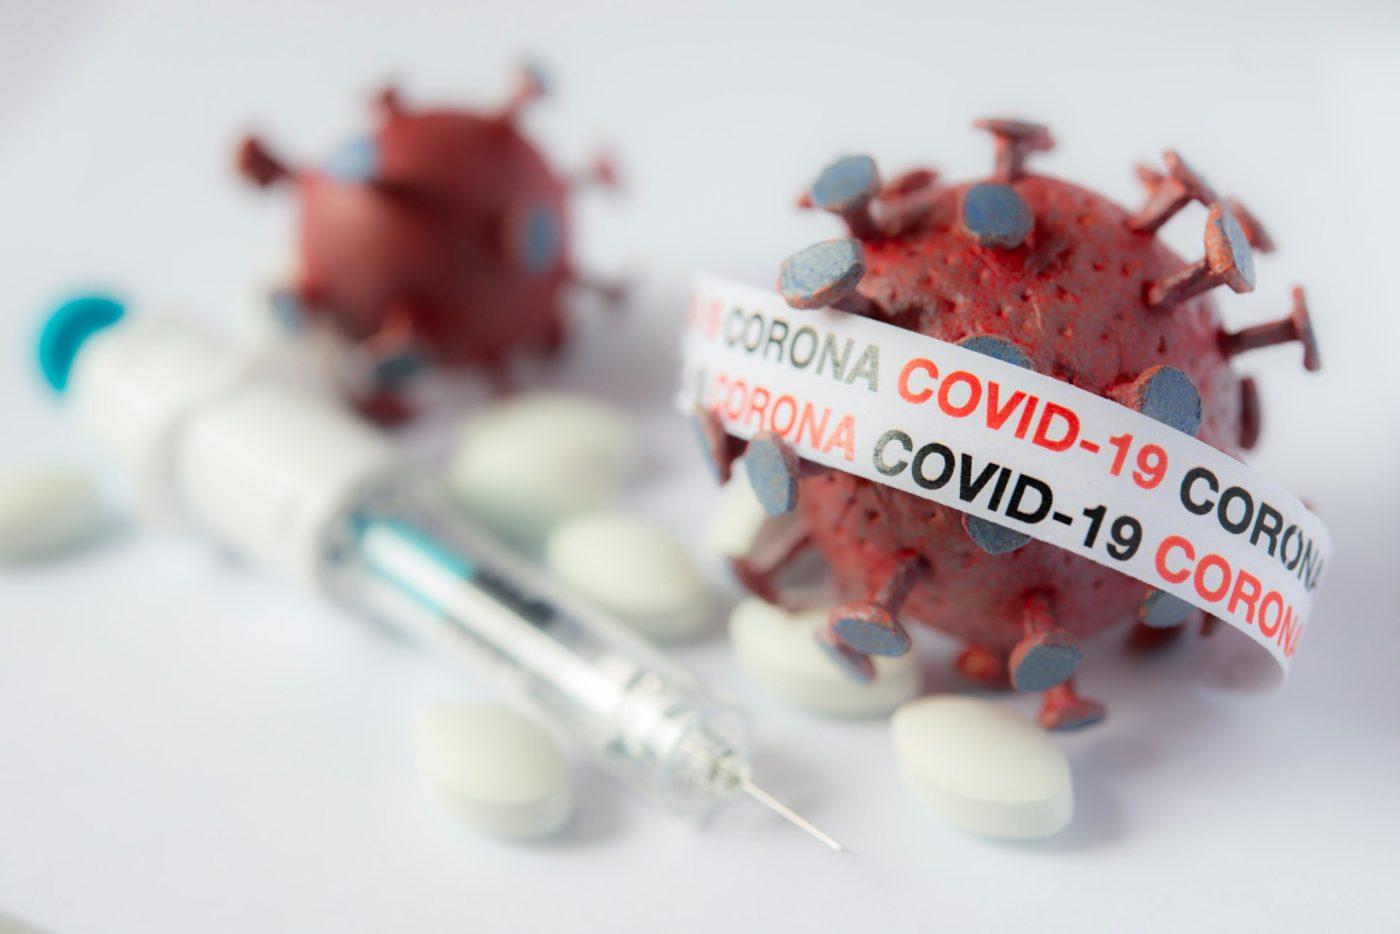 मार्केट में जल्द आ सकती है कोविड की दवा, घोड़ों की एंटीबॉडी से बनी दवा का जारी है परीक्षण